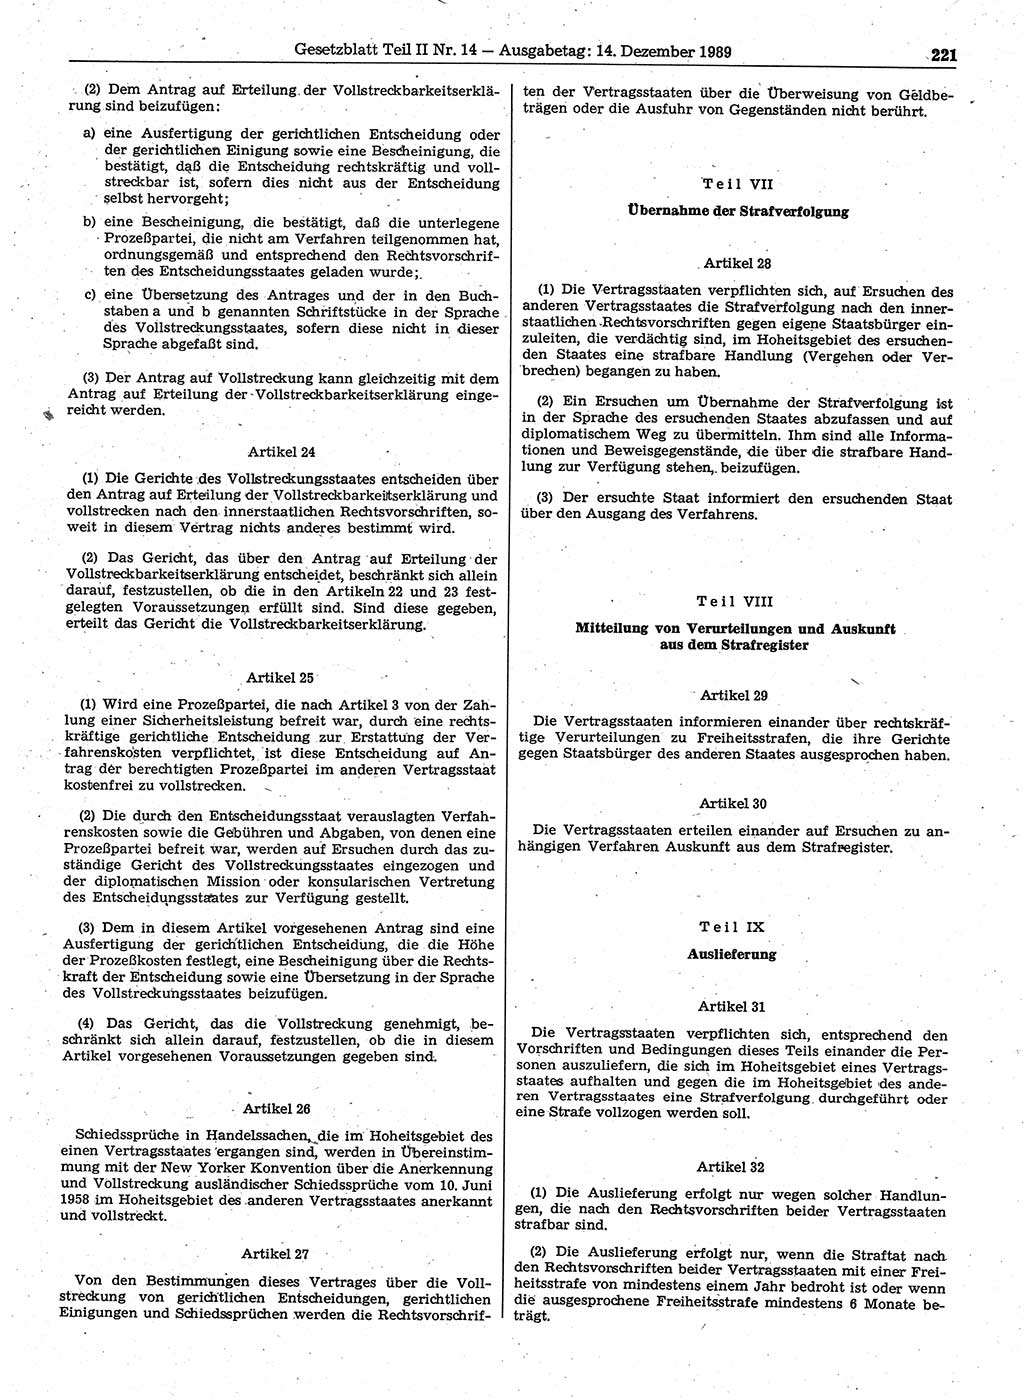 Gesetzblatt (GBl.) der Deutschen Demokratischen Republik (DDR) Teil ⅠⅠ 1989, Seite 221 (GBl. DDR ⅠⅠ 1989, S. 221)